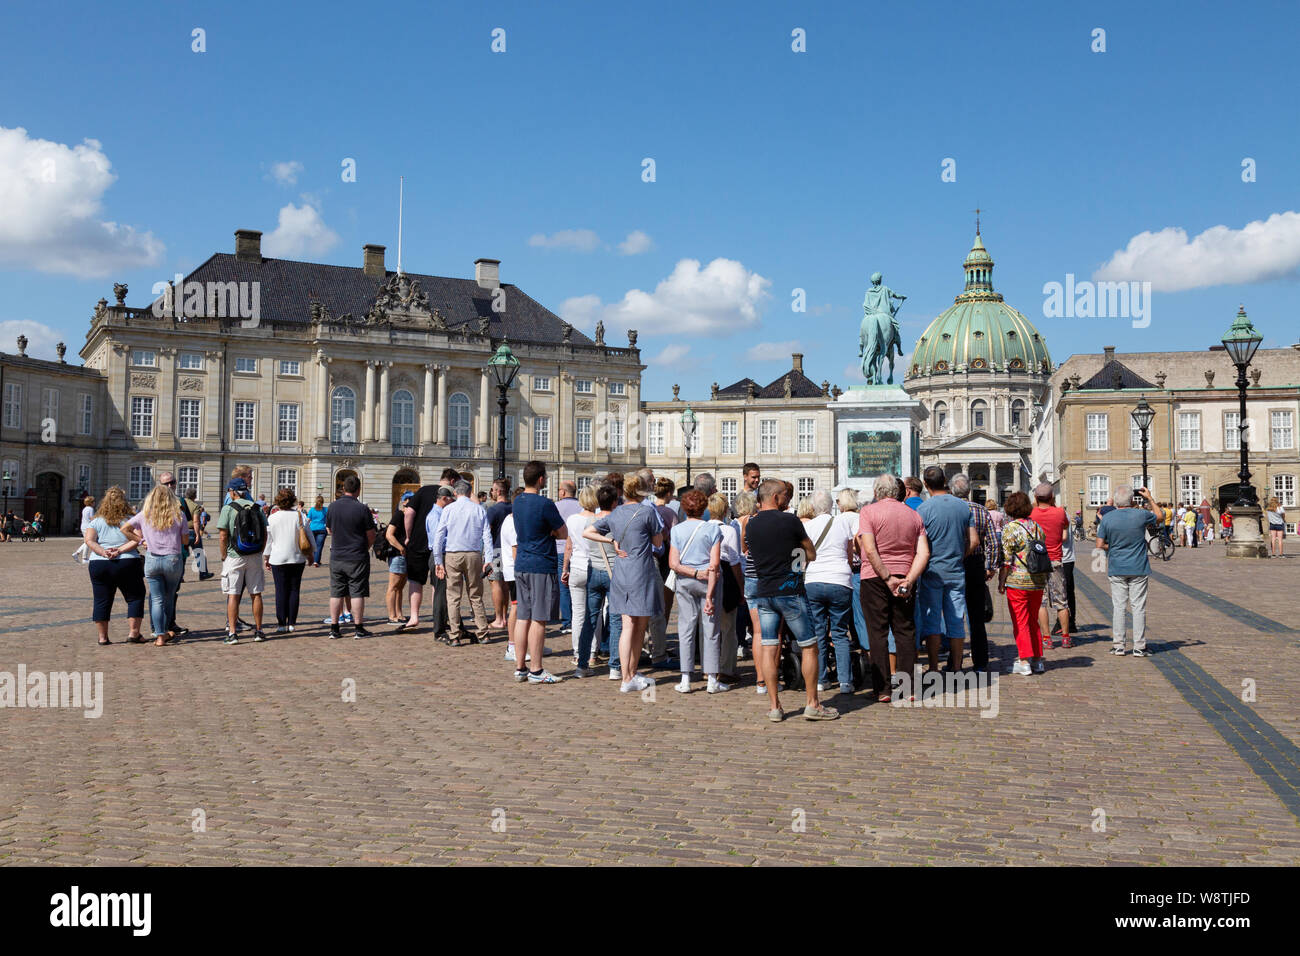 Tourisme de Copenhague ; les touristes sur une visite guidée, le Palais d'Amalienborg Copenhagen Danemark - Palais du xviie siècle, Copenhague Danemark Scandinavie Europe Banque D'Images